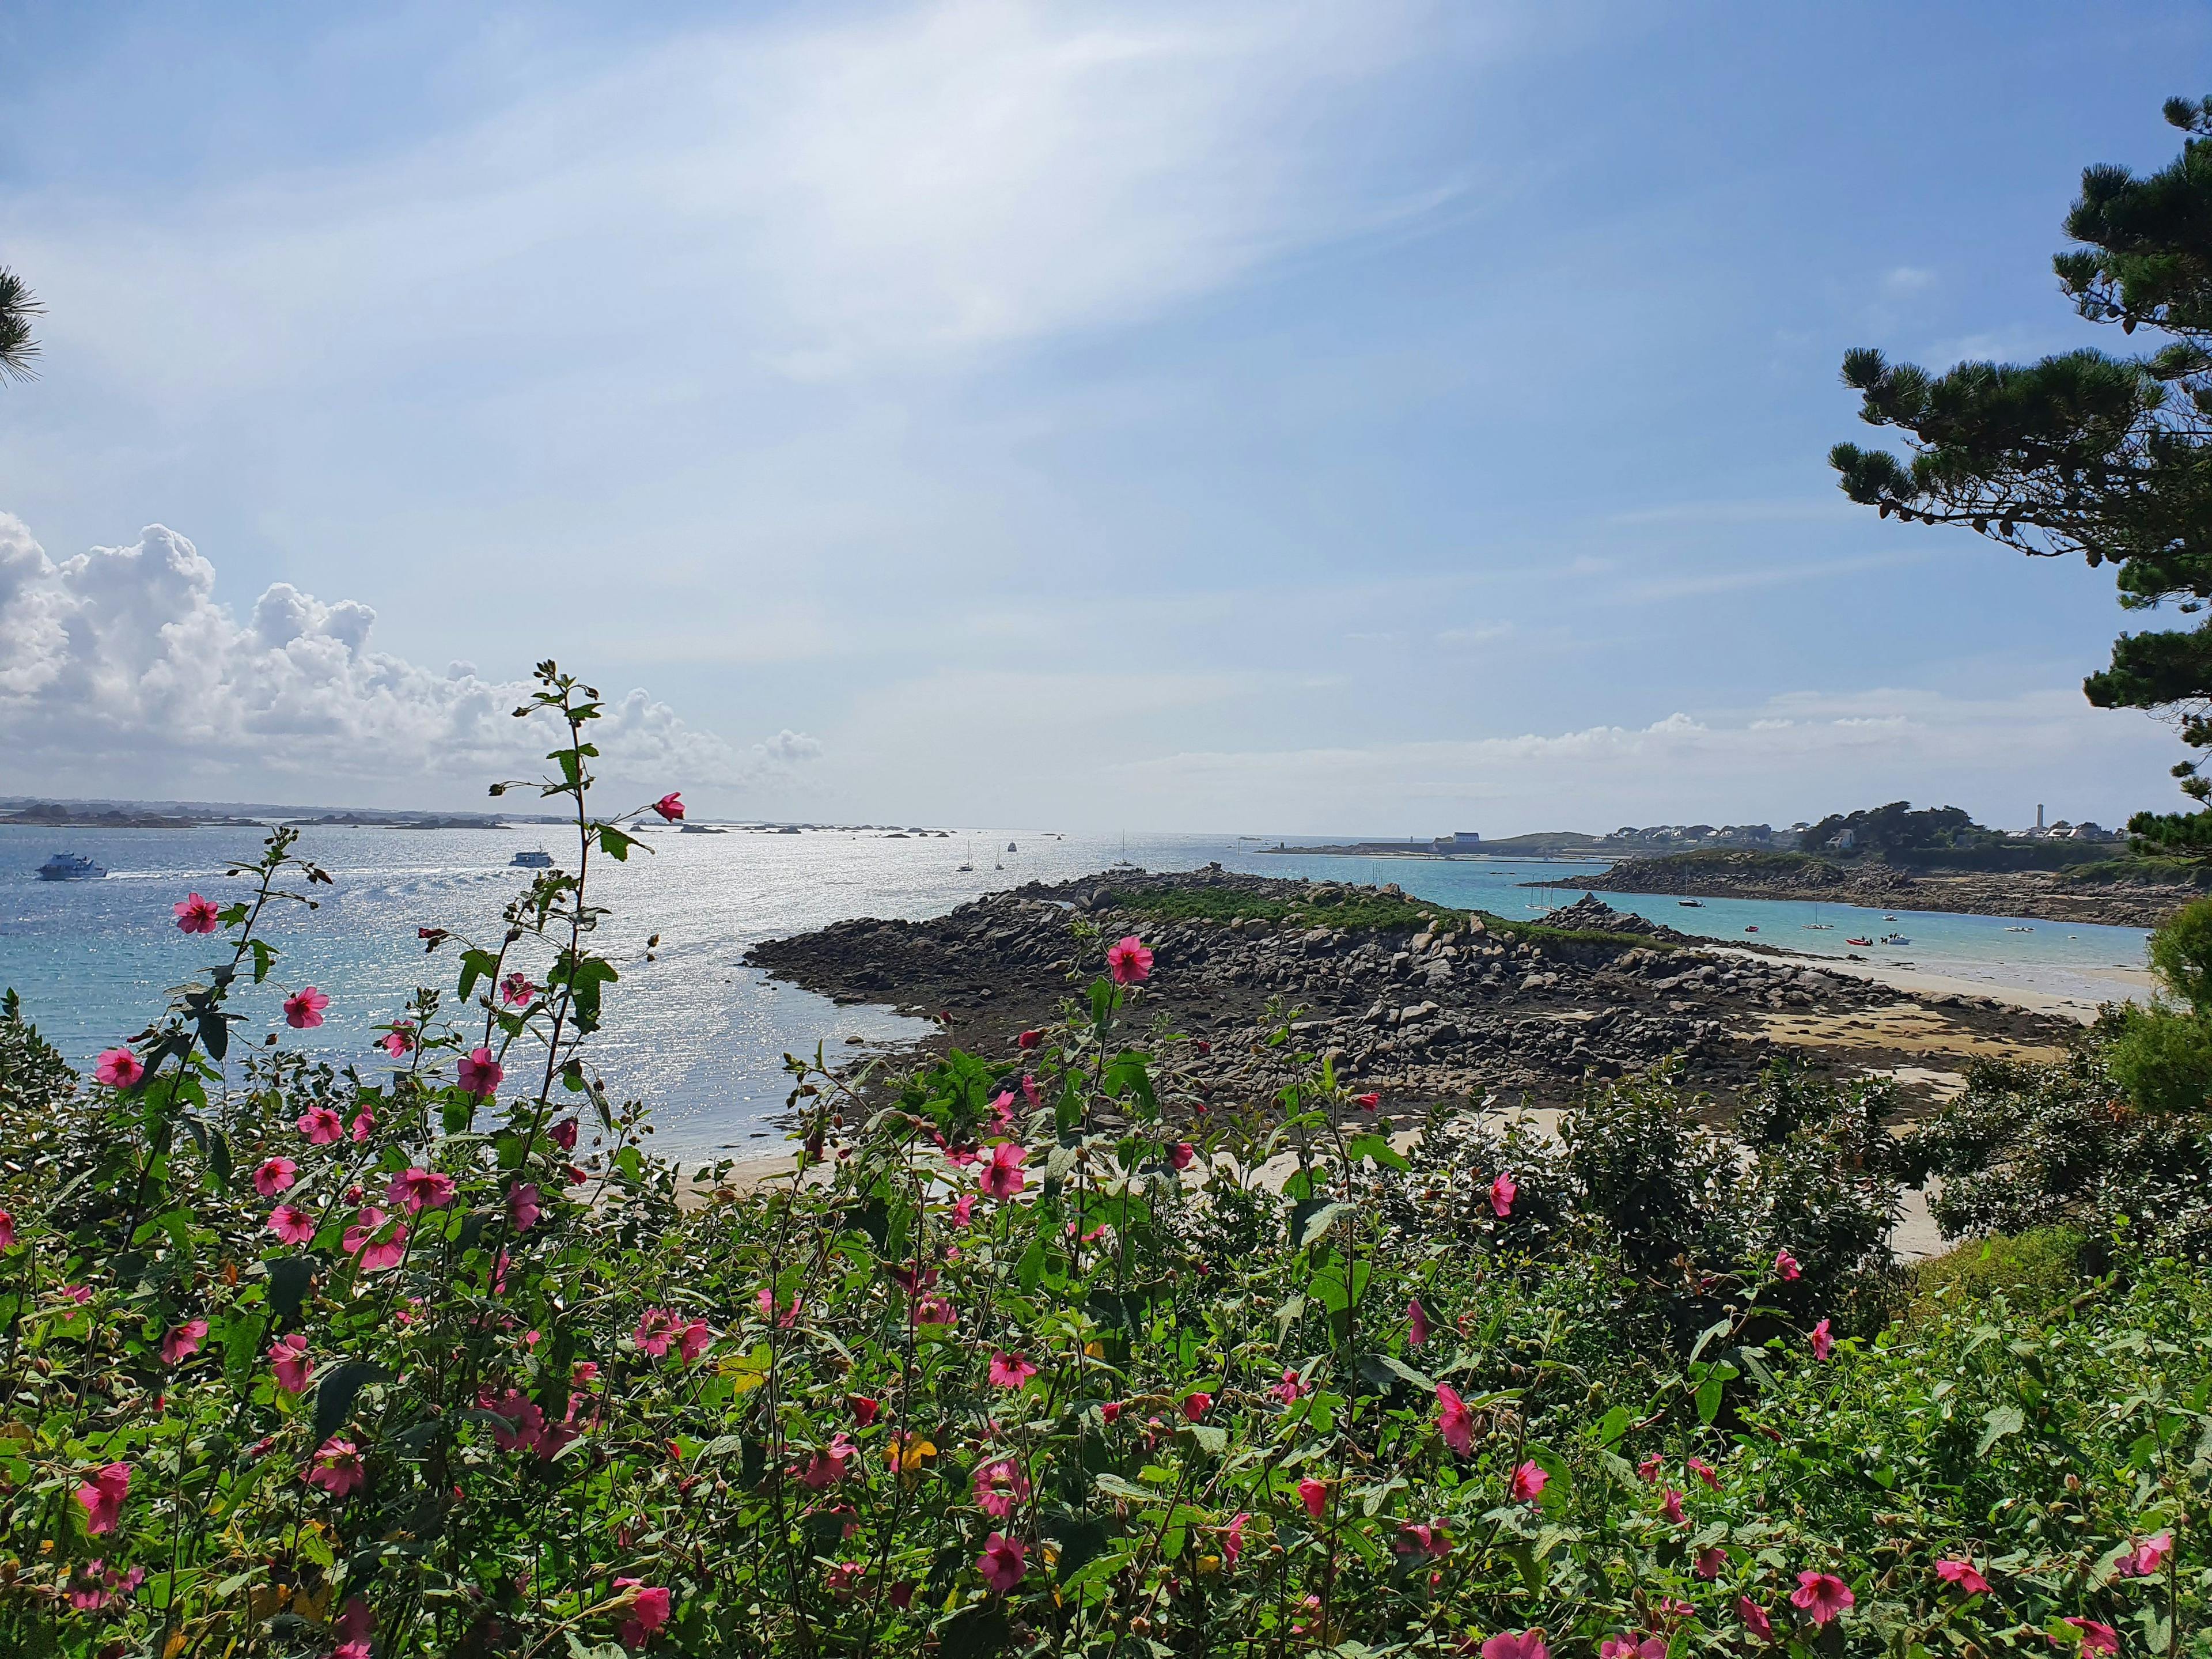 Les eaux turquoises et la flore exotique de l'île de Batz. ©Roole